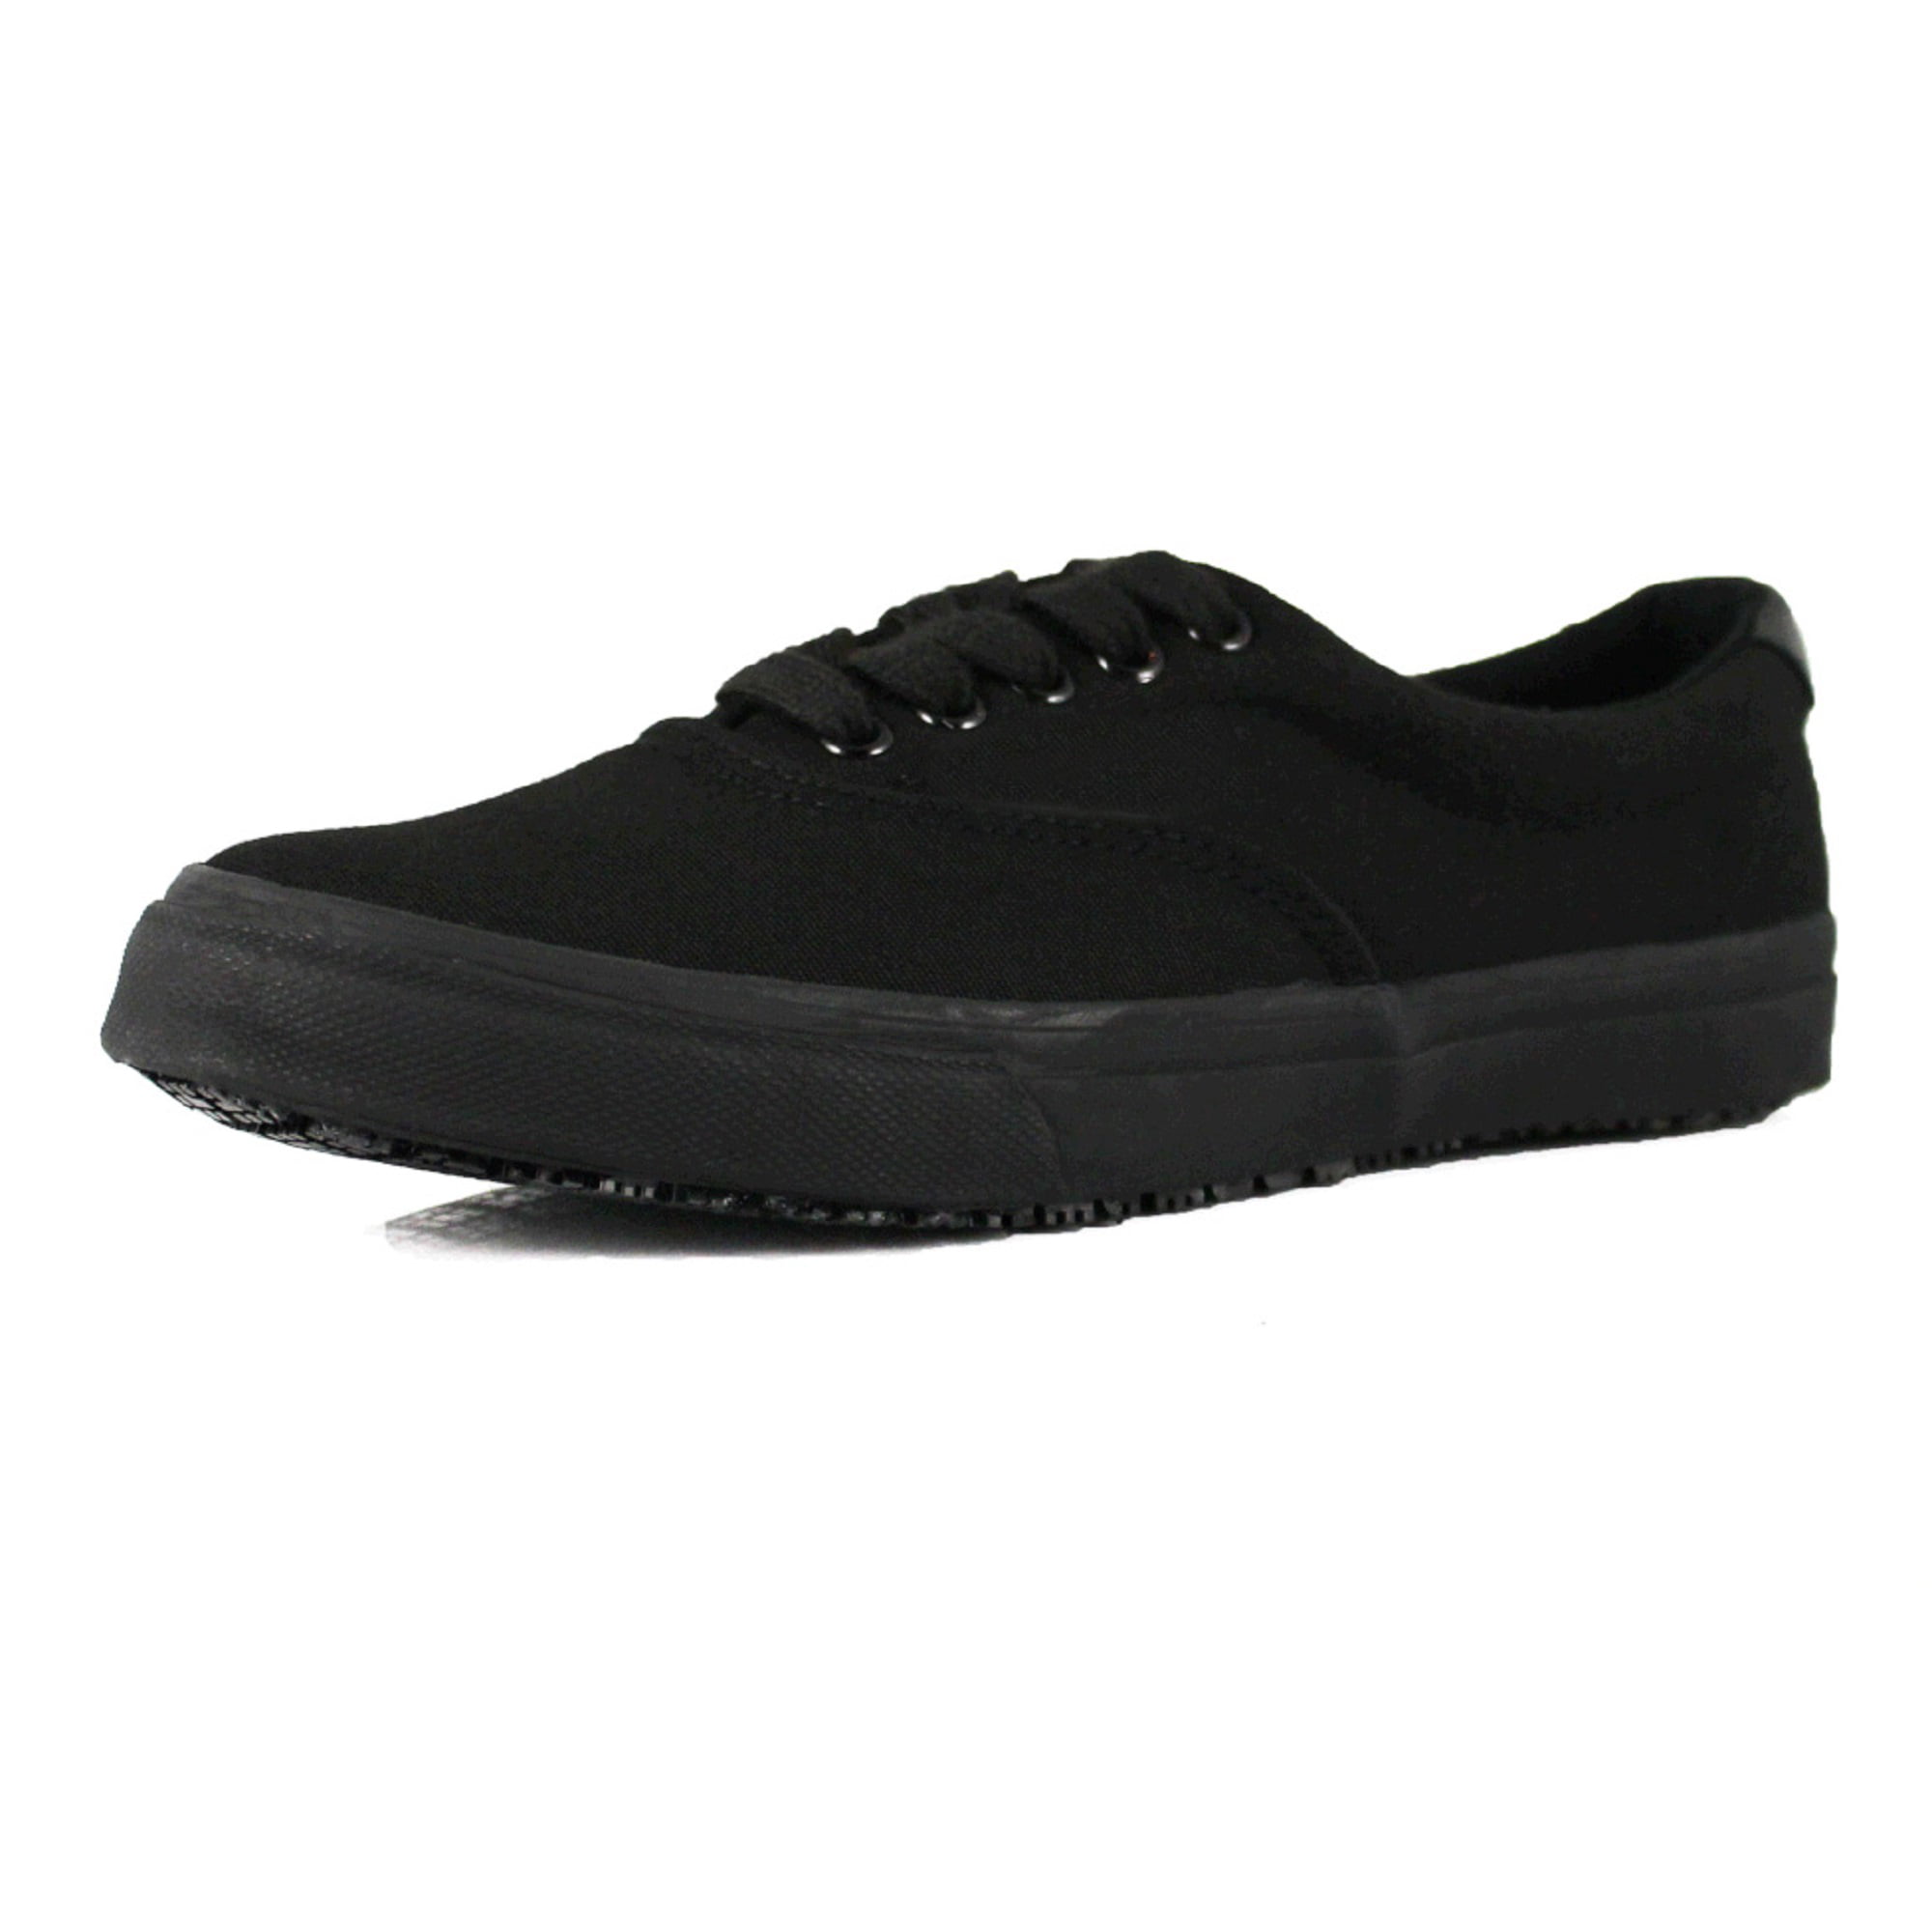 comfy black non slip shoes